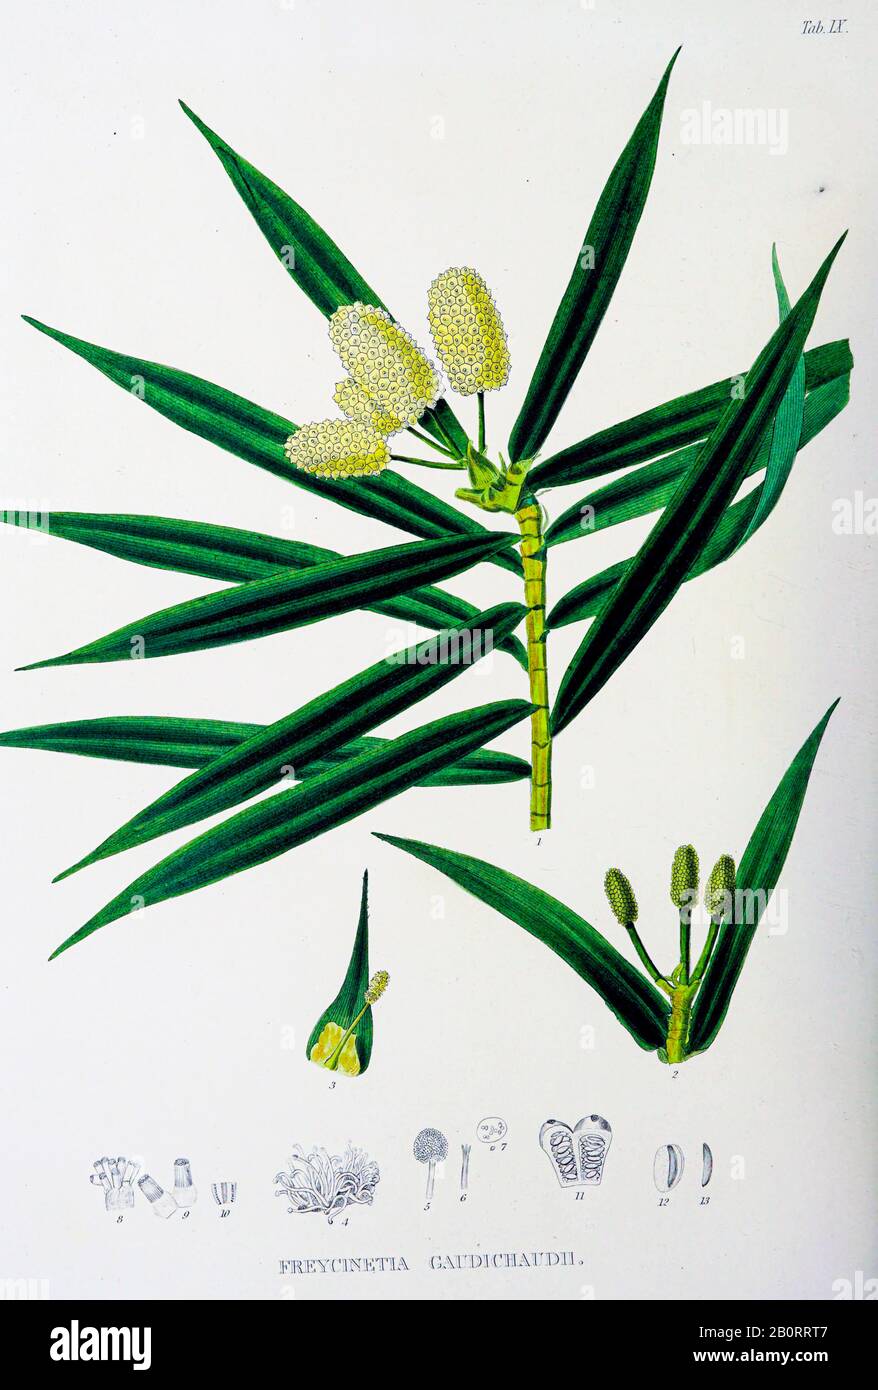 Freycinetia Gaudichaudii from the 19th century manuscript 'Plantae Javanicae rariores, descriptae iconibusque illustratae, quas in insula Java, annis Stock Photo